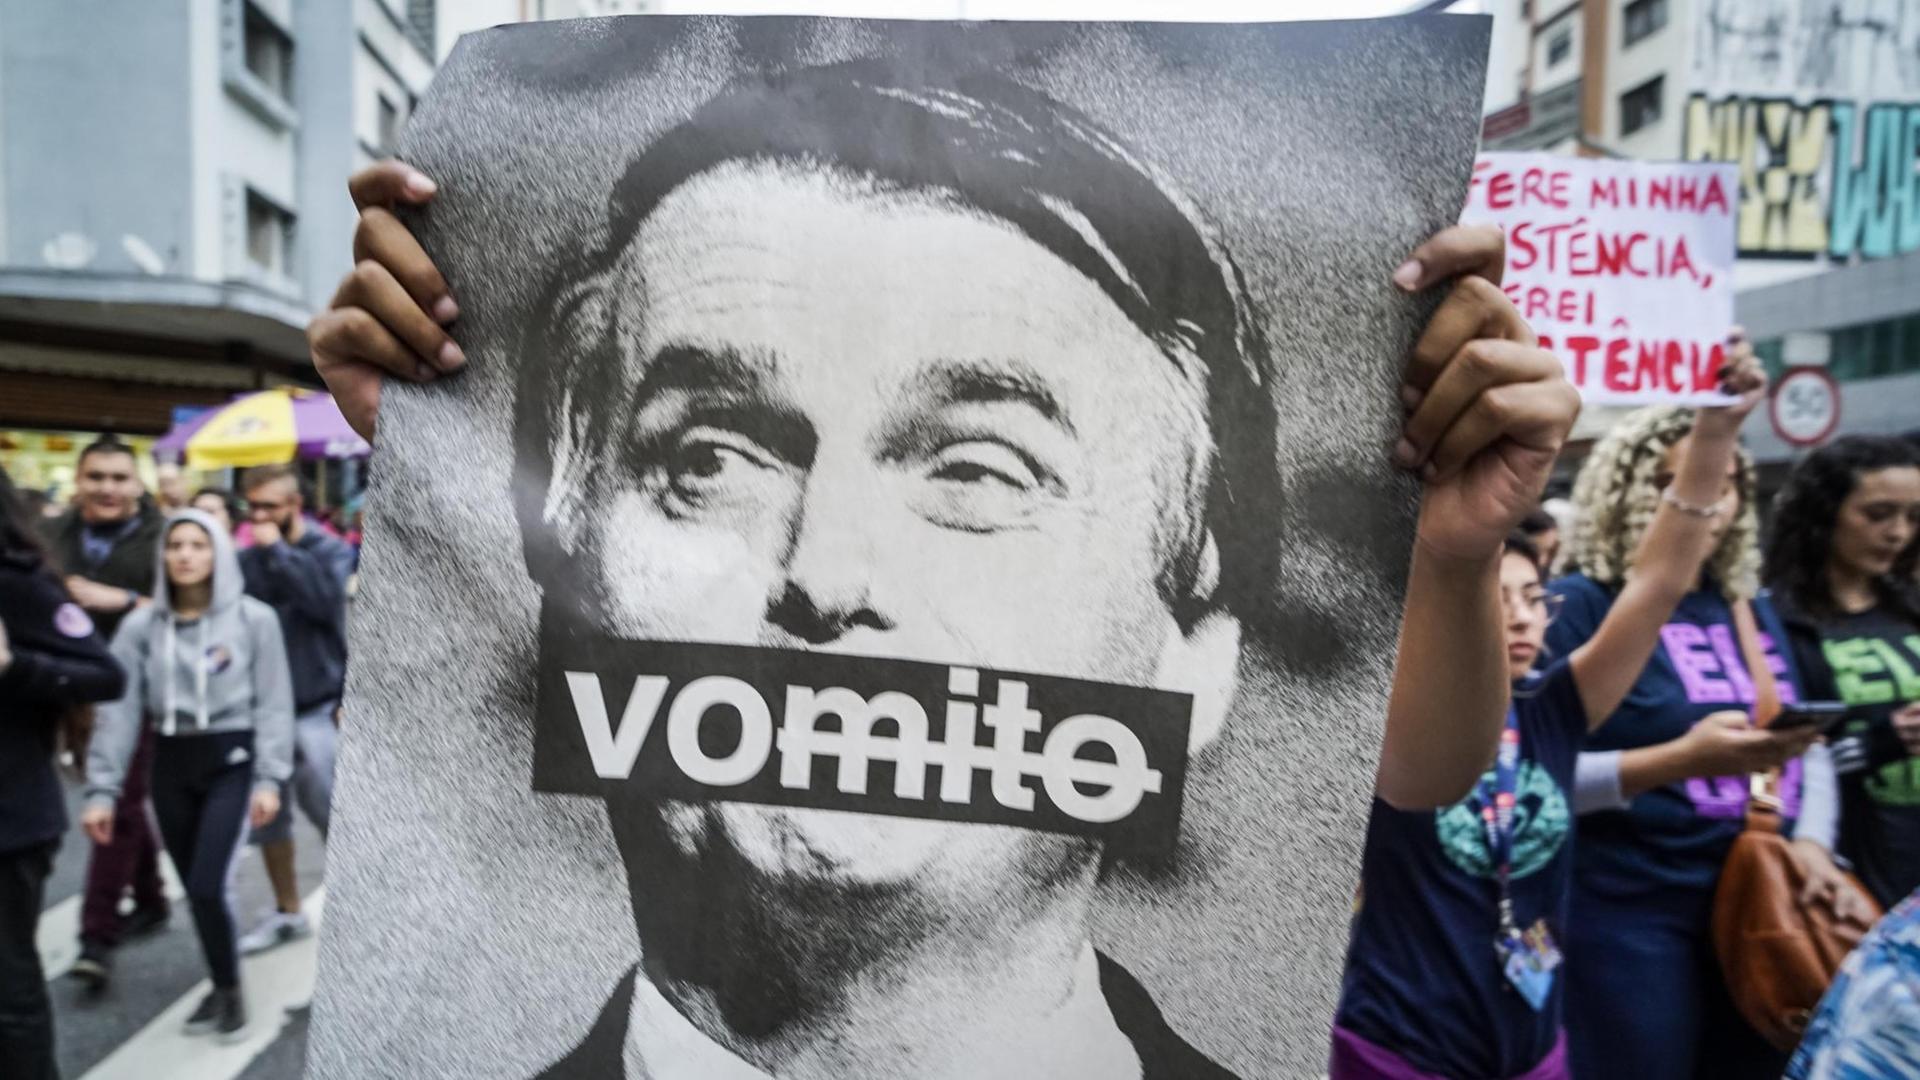 Eine Frau hält bei einer Demonstration gegen den rechtsextremen Präsidentschaftskandidaten Bolsonaro ein Bild von Bolsonaro mit der Aufschrift "Vomito" ("Erbrochene") hoch. Zahlreiche Menschen gingen in Sao Paulo gegen Bolsonaro und seinen rassistischen, frauen- und schwulenfeindlichen Kurs auf die Straße.